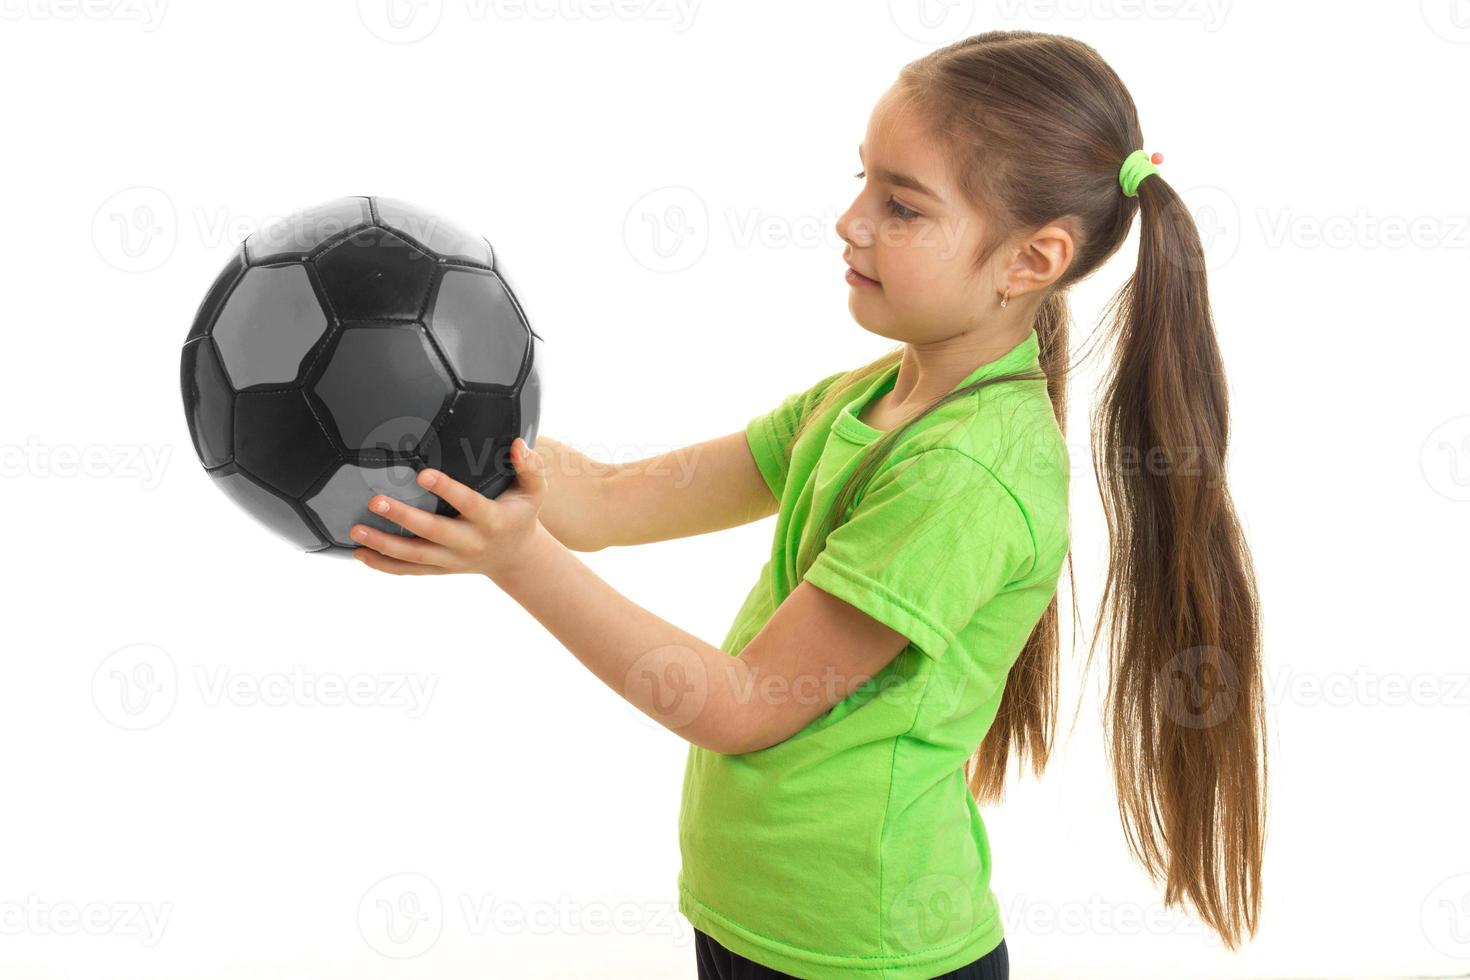 weinig jong meisje met voetbal bal foto